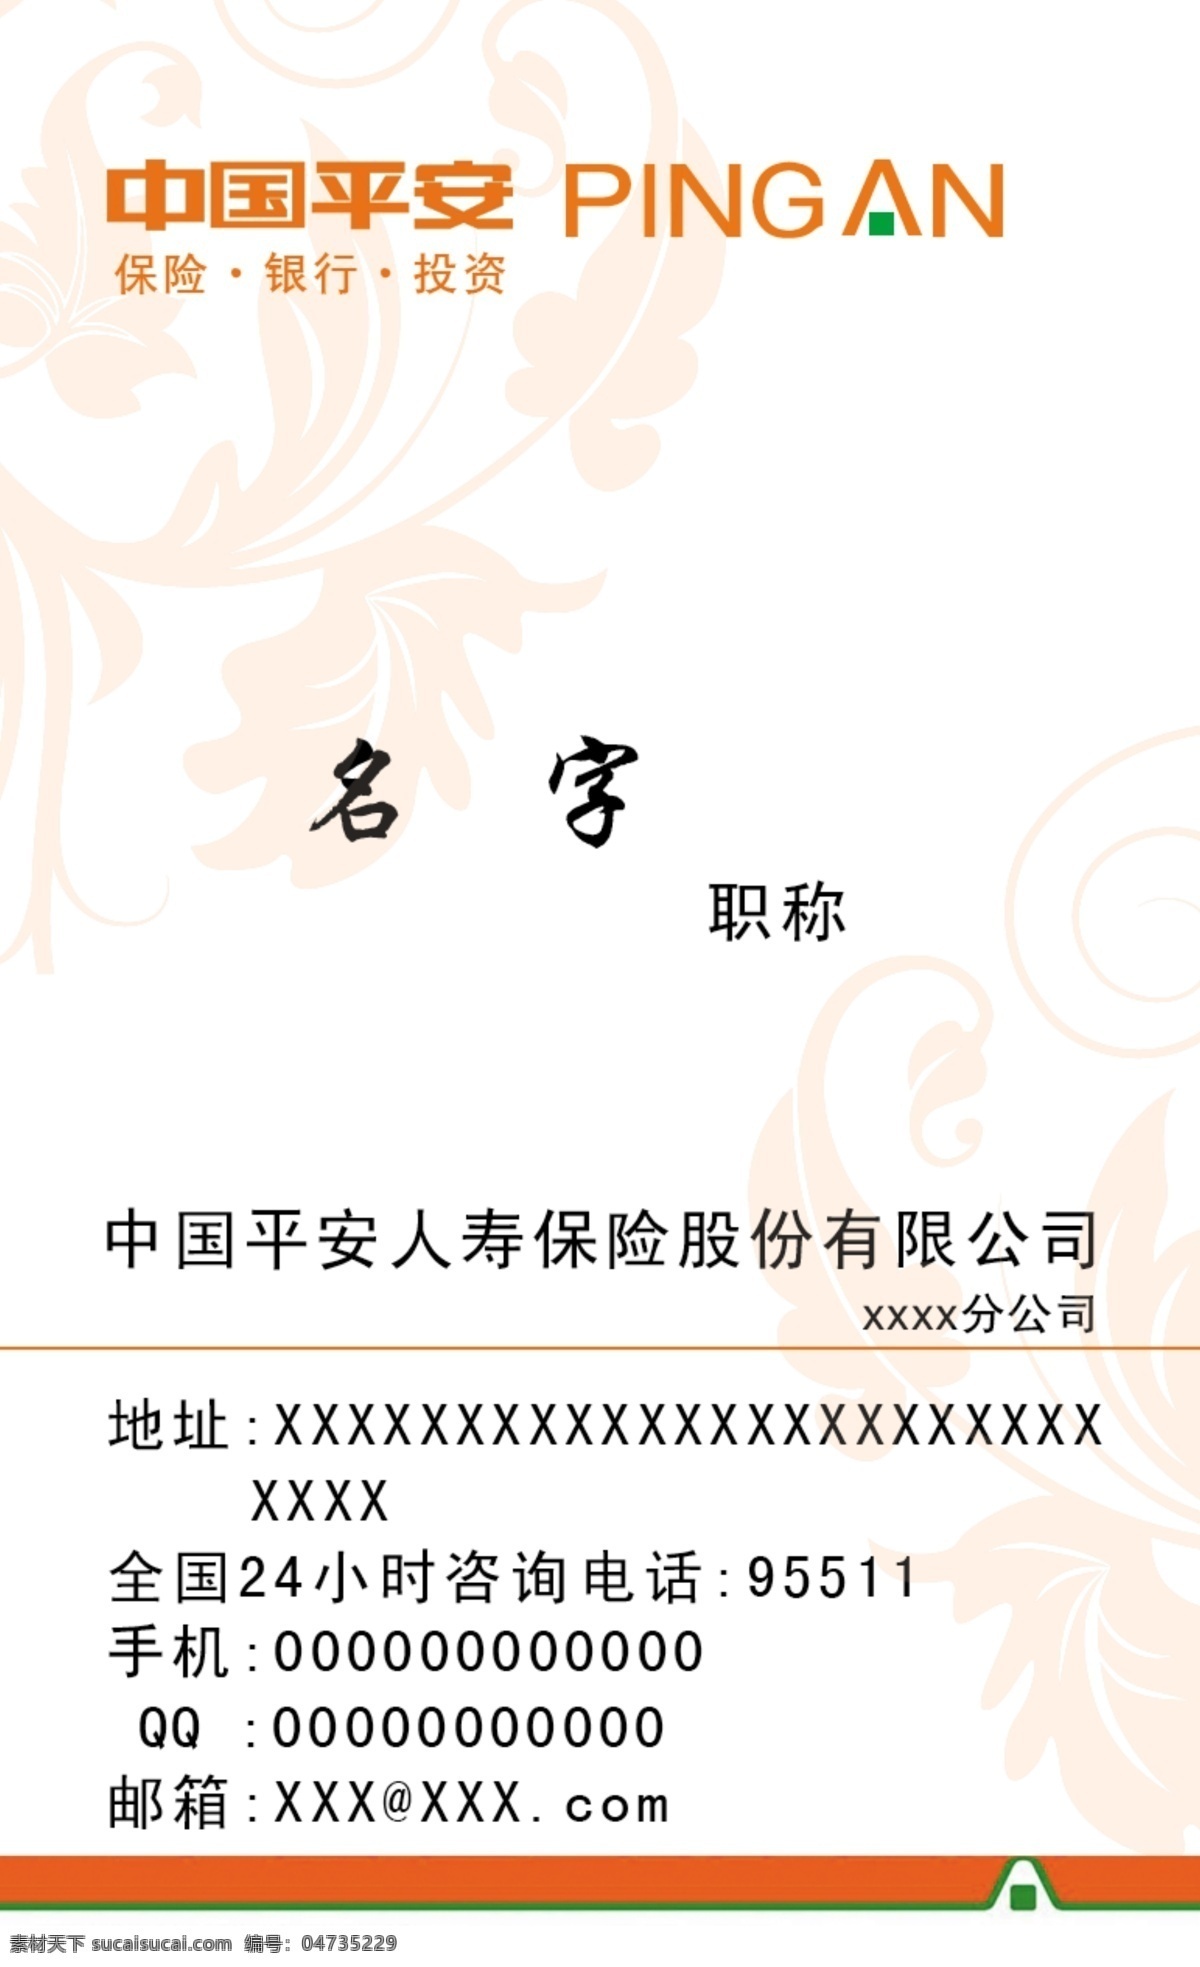 中国平安 名片 logo 平安 名片设计 广告设计模板 源文件